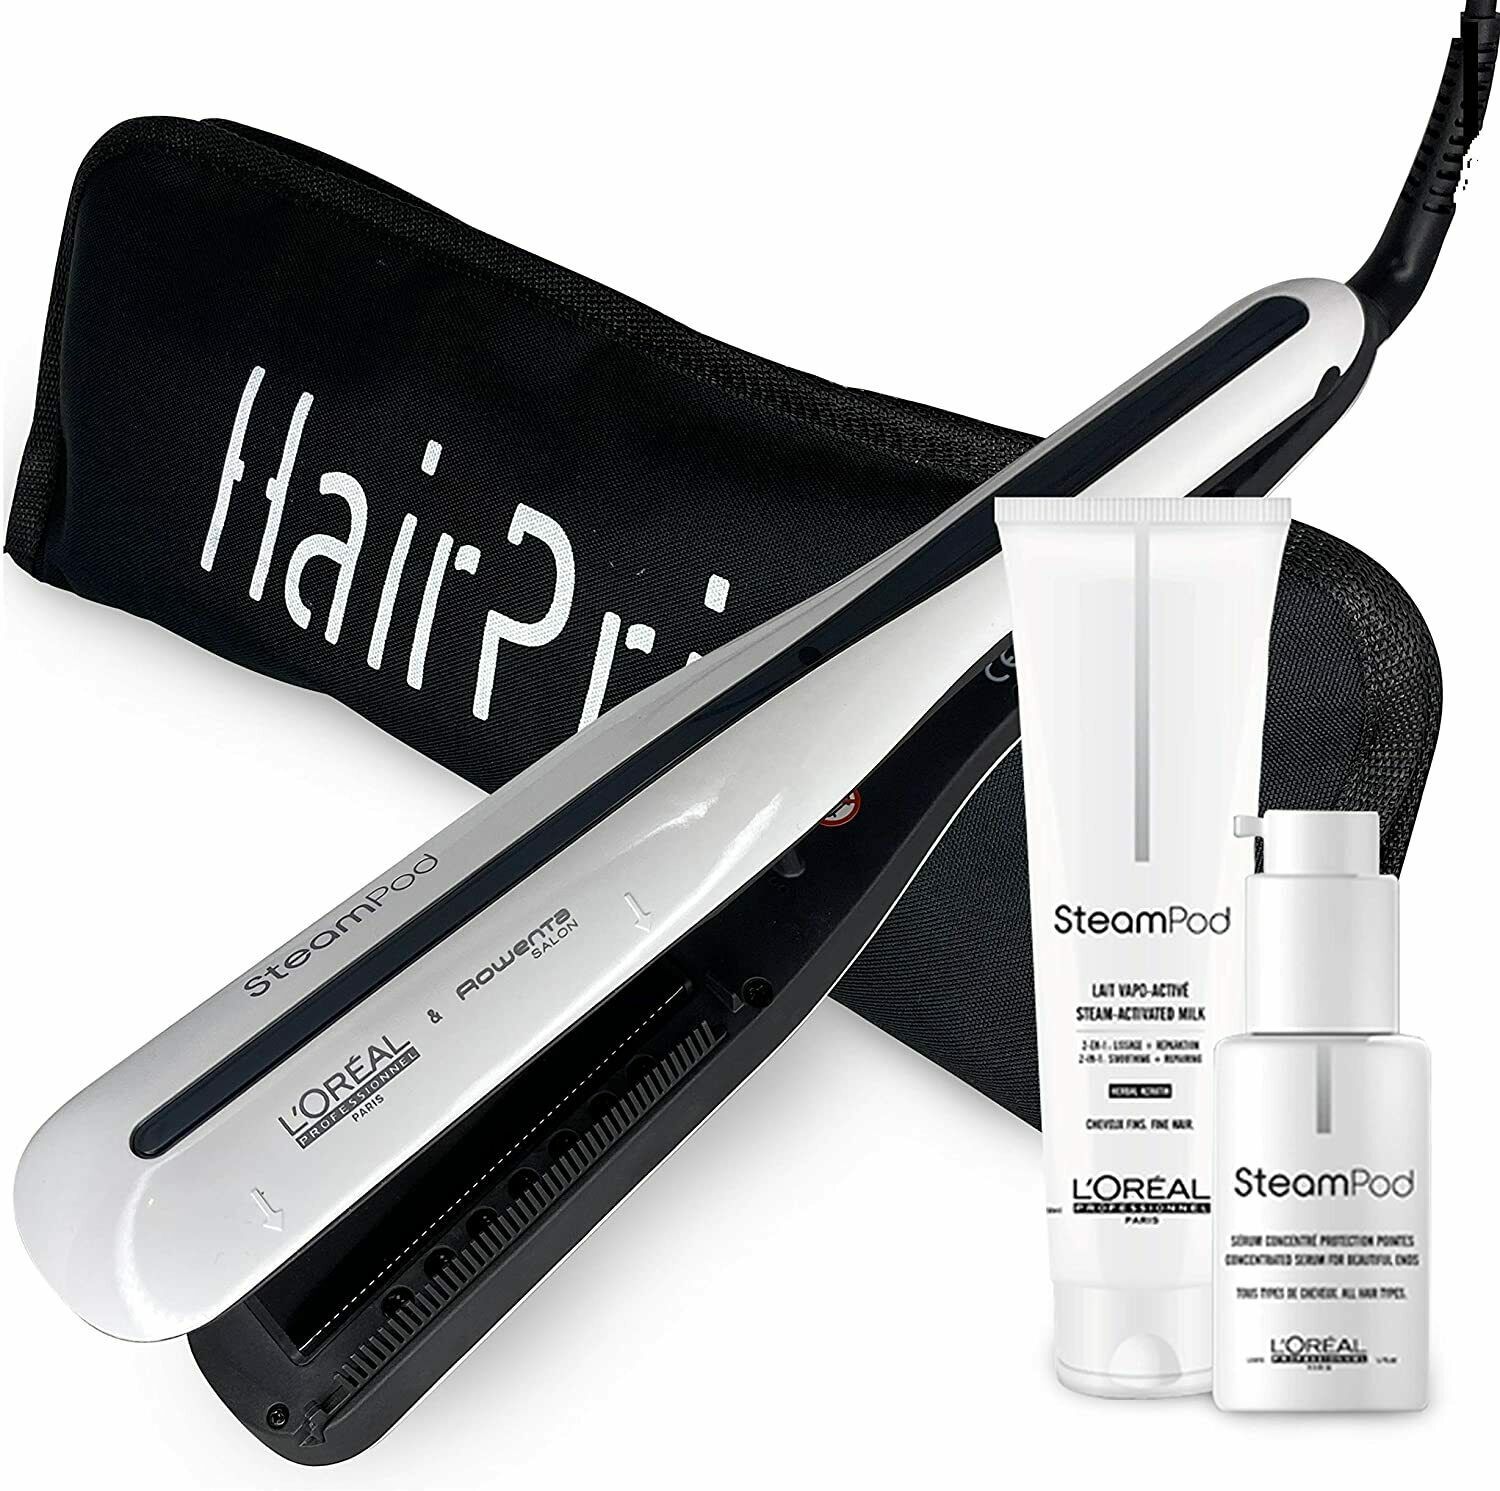 L'oréal professionnel steampod 3.0 hair straightener devapor for thin hair - $627.45